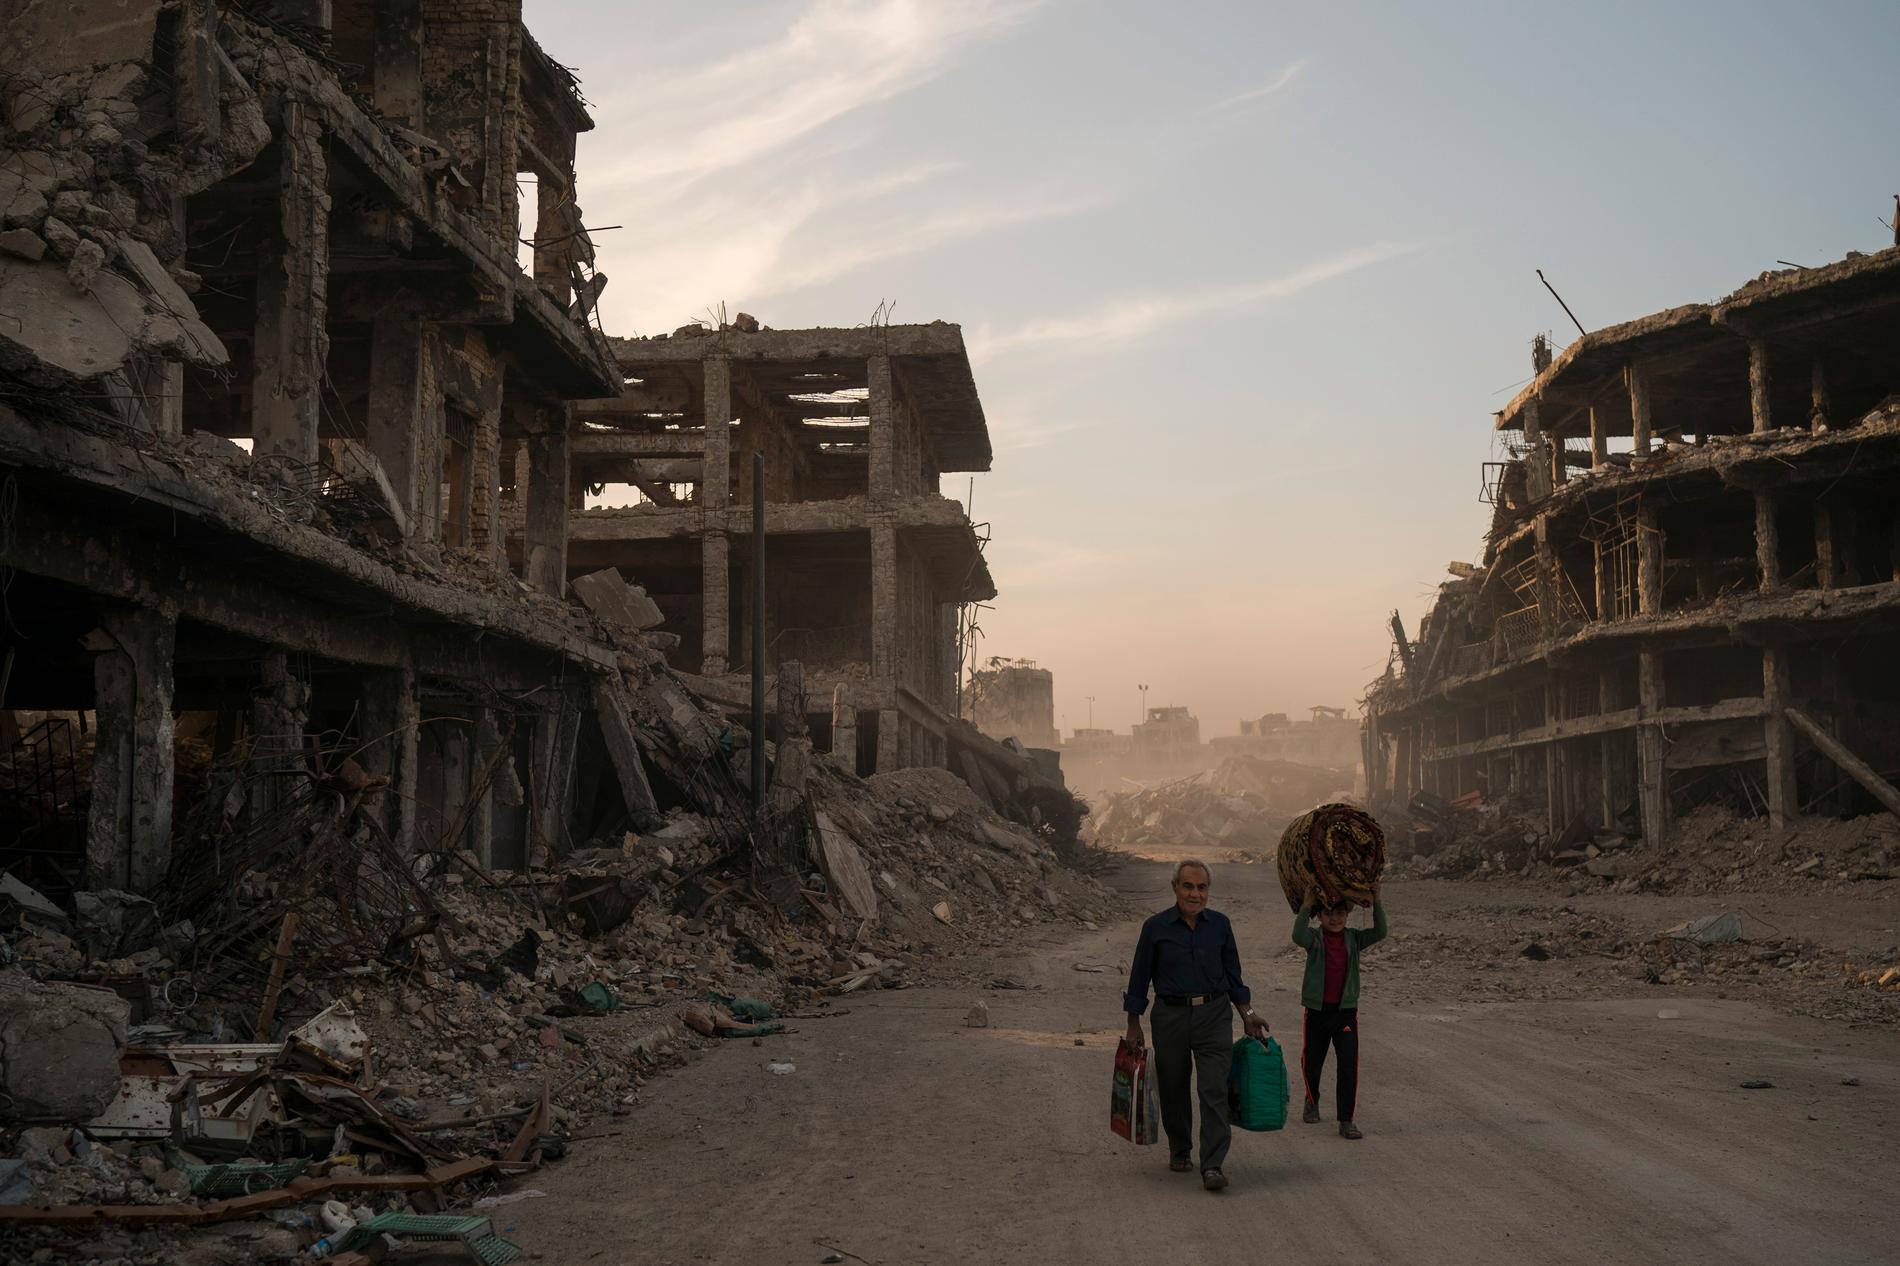 Det har gått ett år sedan Bagdad utropade seger mot IS – efter en förödande kamp. På bilden syns Haidr och Abdullah som flyttade tillbaka till Mosul efter det att extremisterna drivits ut från den irakiska staden. Bild från november 2017.